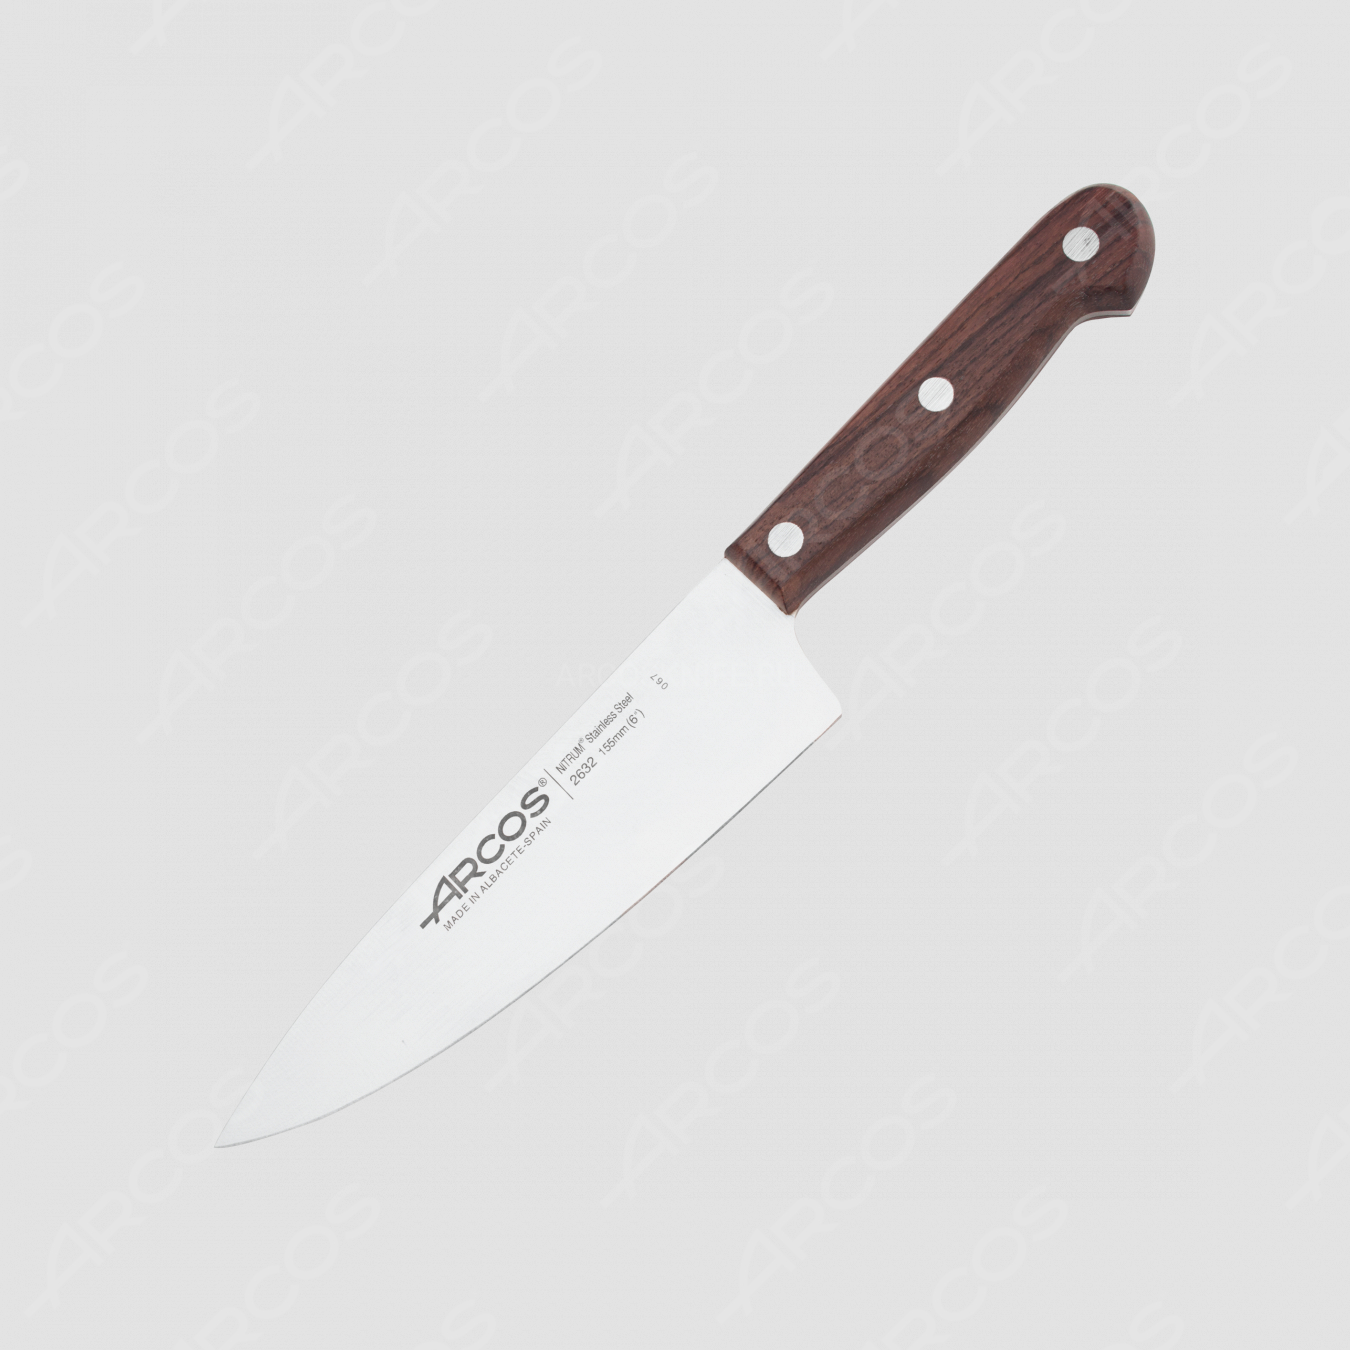 Нож кухонный поварской 17 см, серия Atlantico, ARCOS, Испания